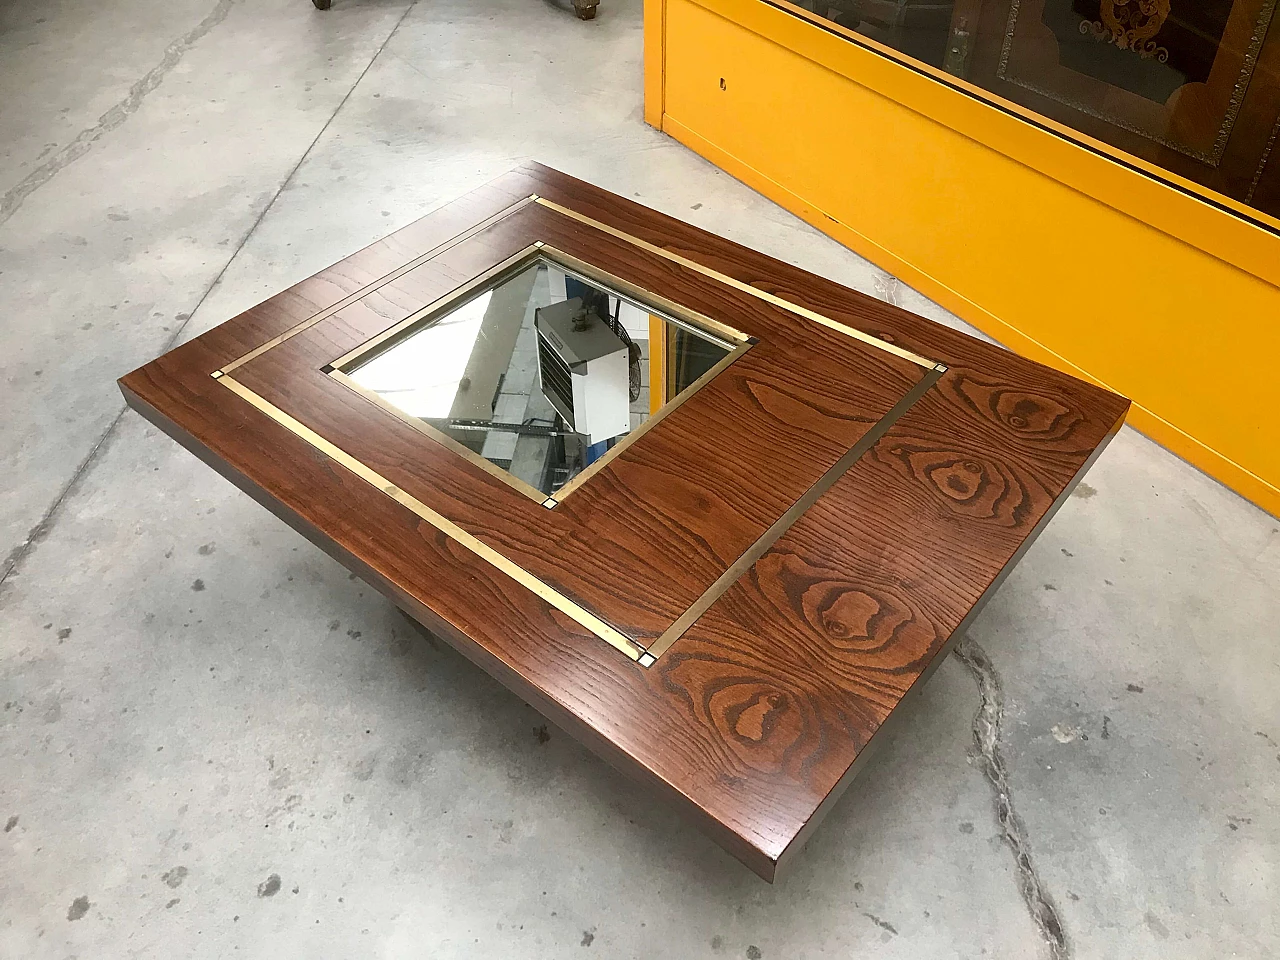 Tavolino da Caffè tipo Willy Rizzo in legno di rovere con specchio e profili di ottone, originale anni '60/'70 1226022